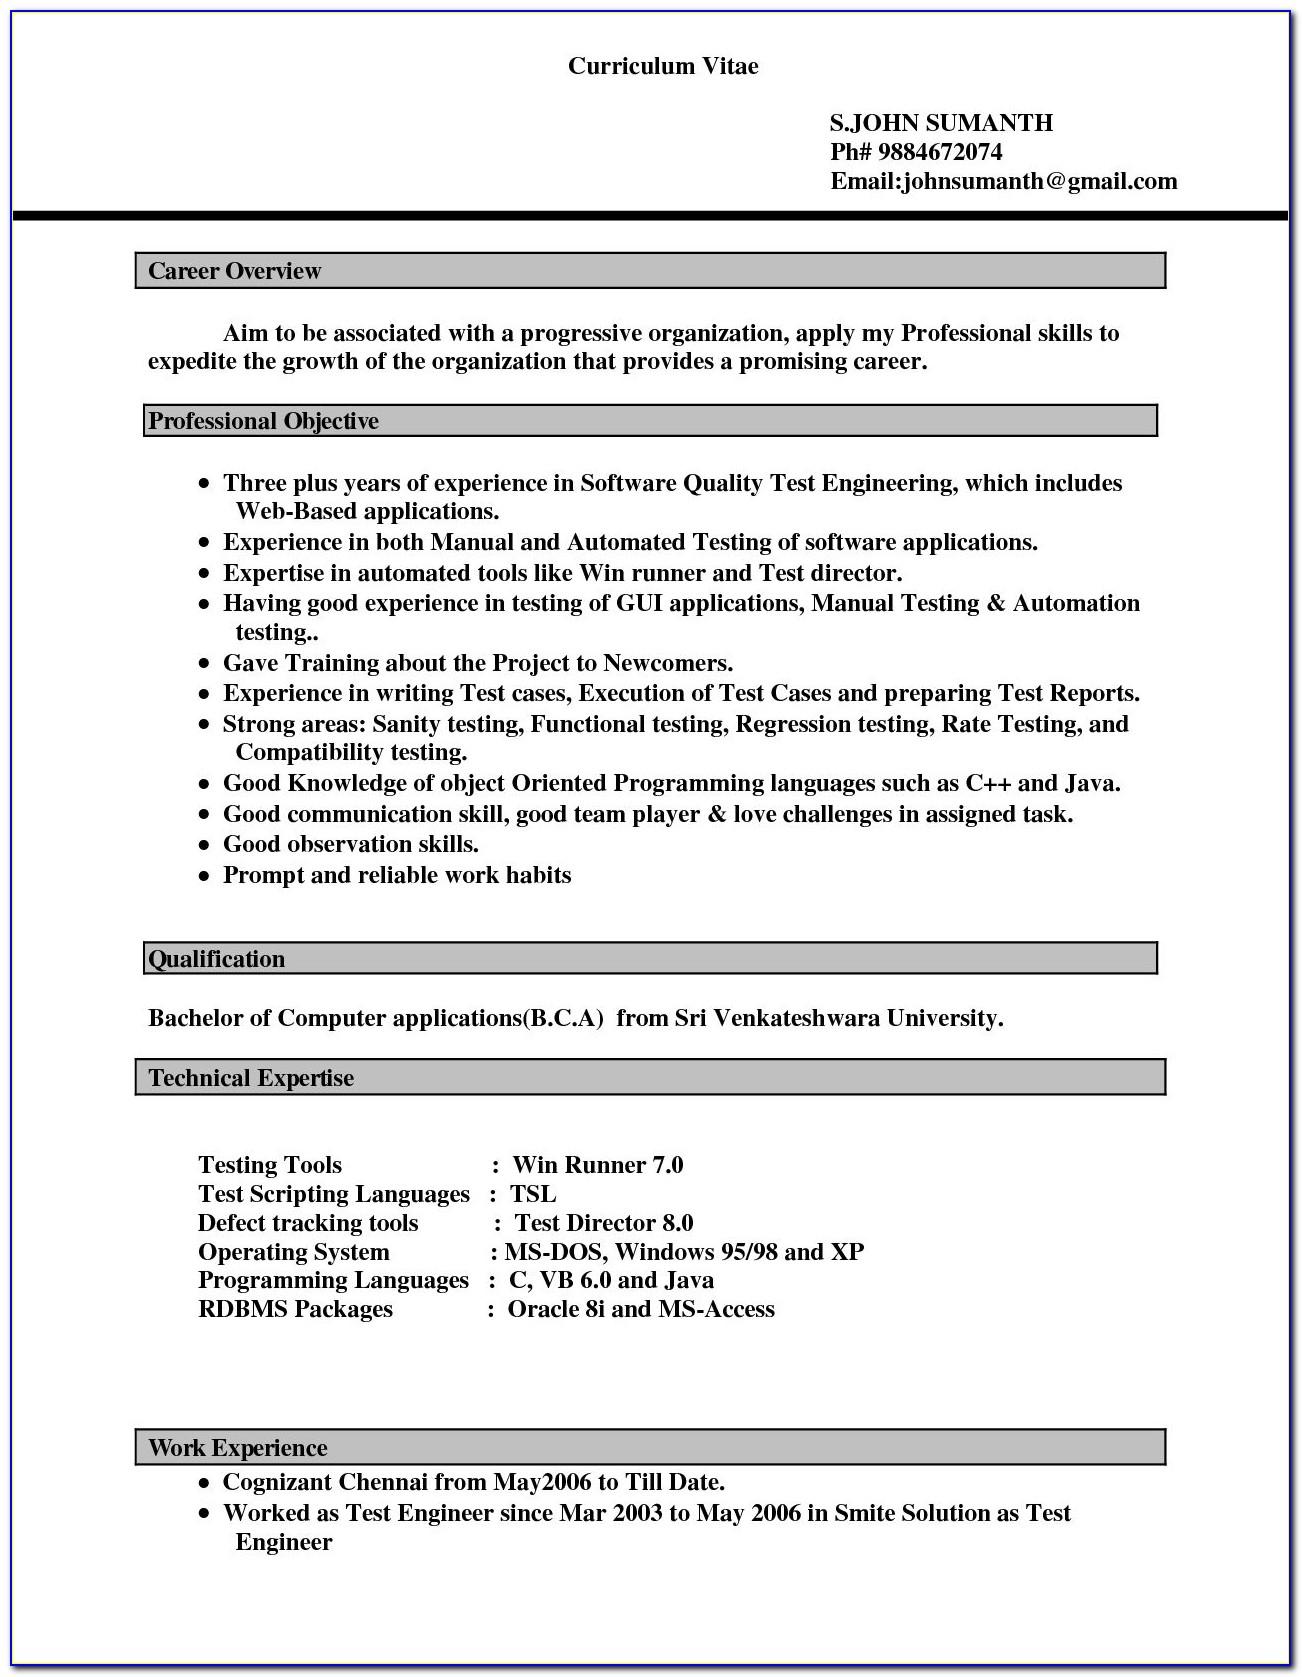 Resume Sample For Senior Financial Analyst